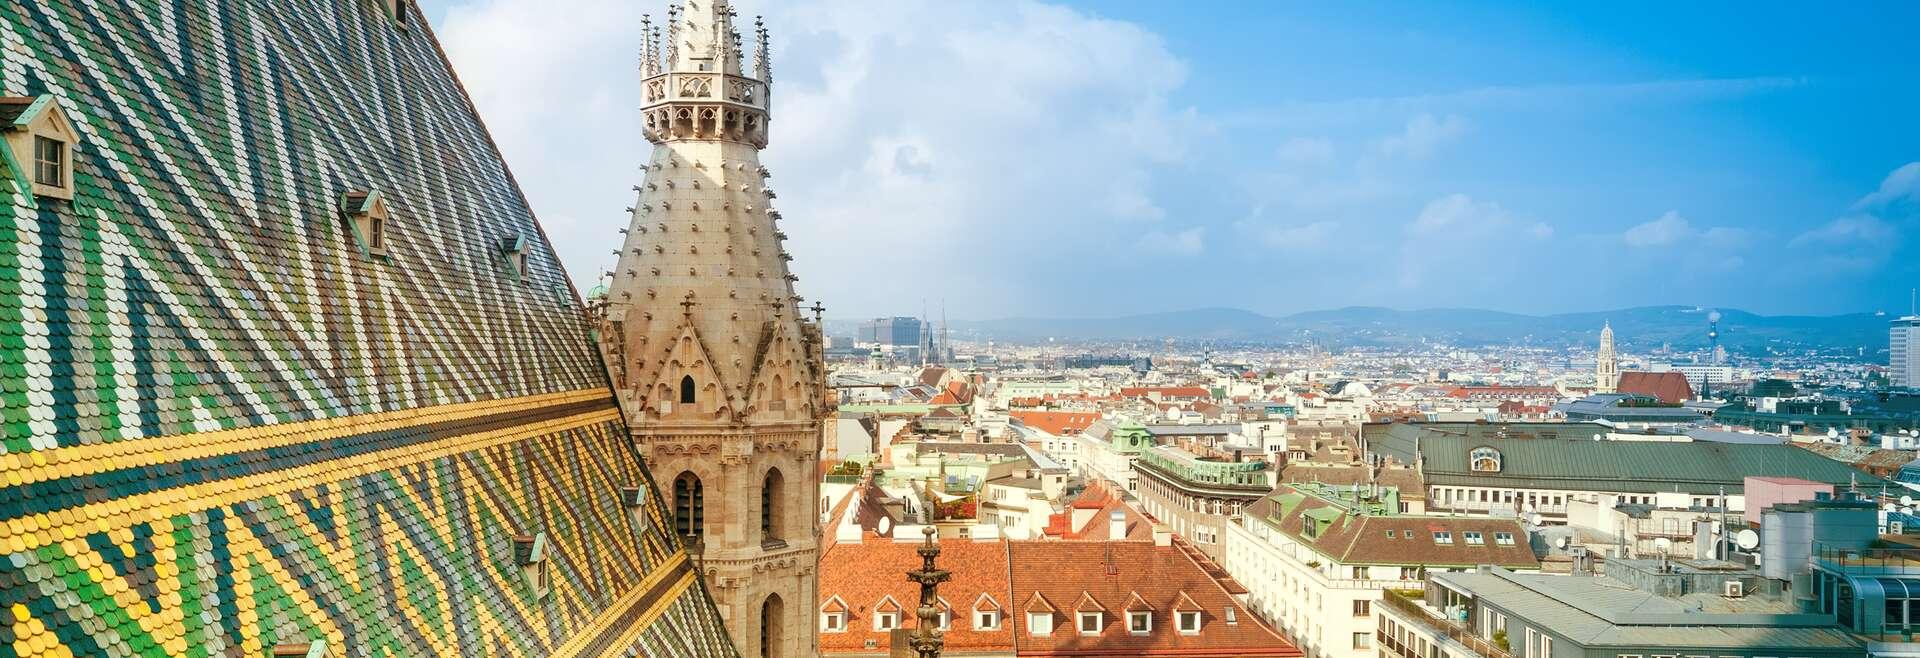 Séjour linguistique Autriche, Vienne, Cathédrale